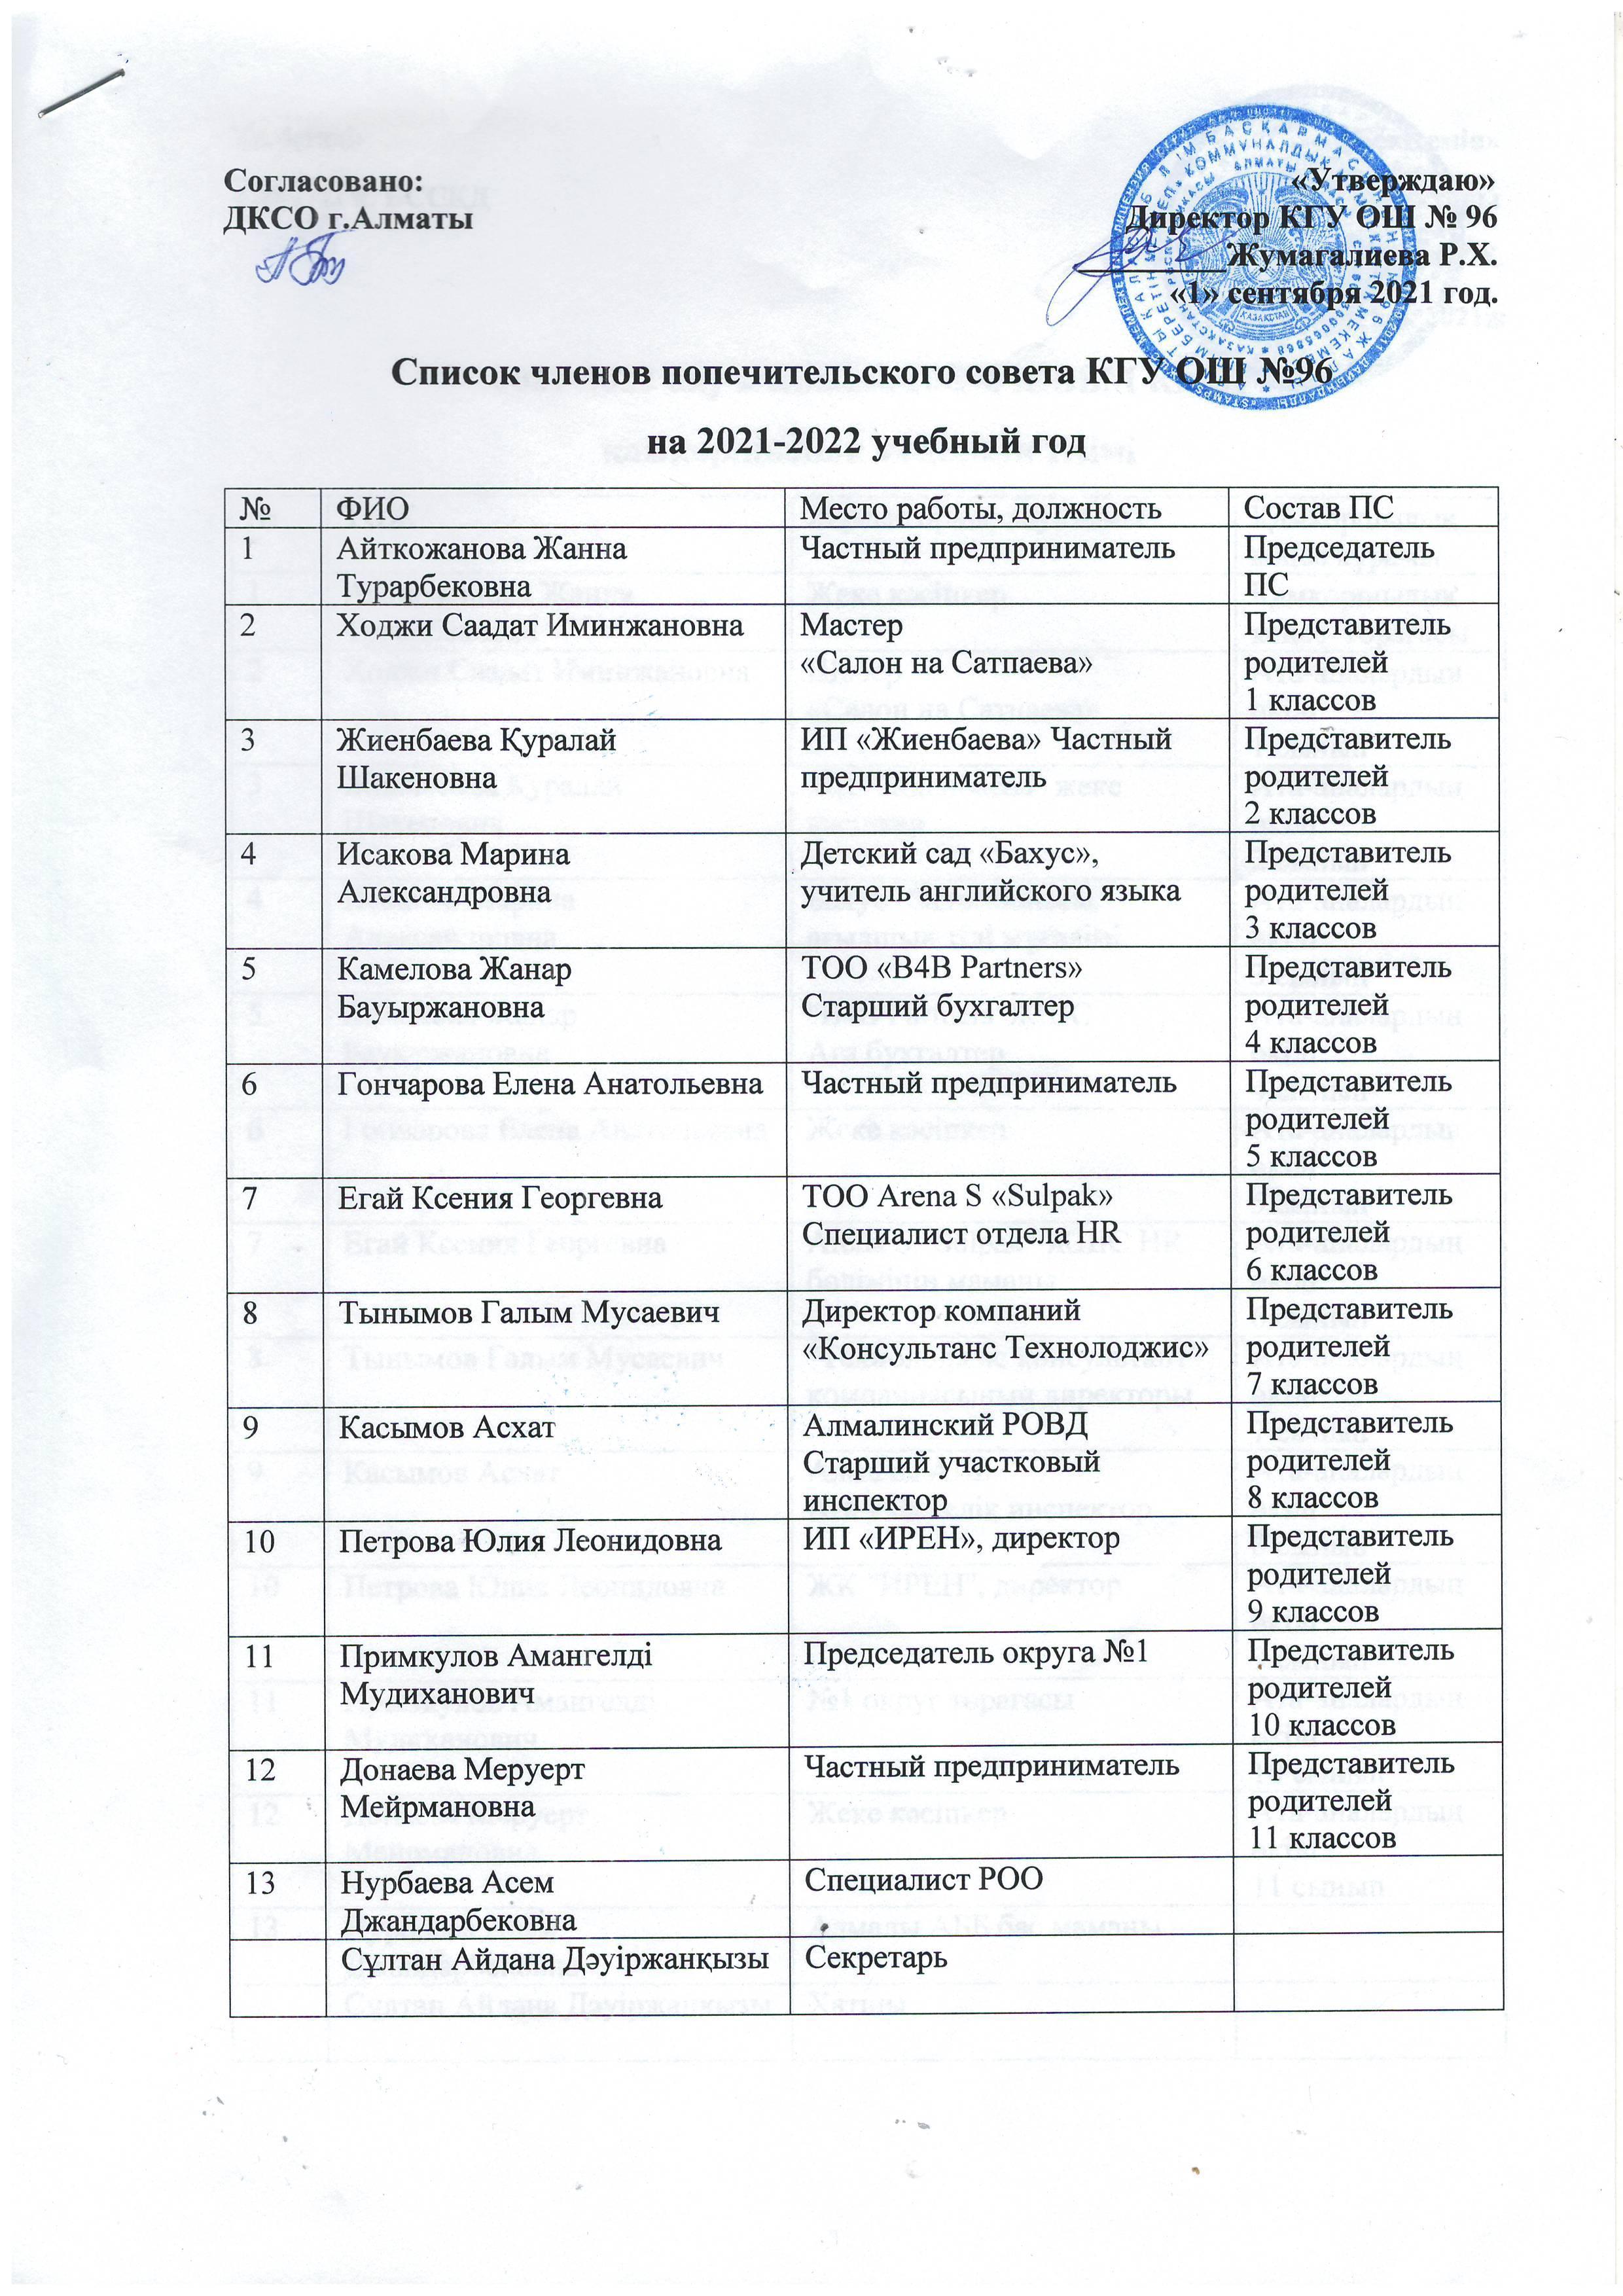 Список членов попечительского совета КГУ ОШ №96 на 2021-2022 учебный год